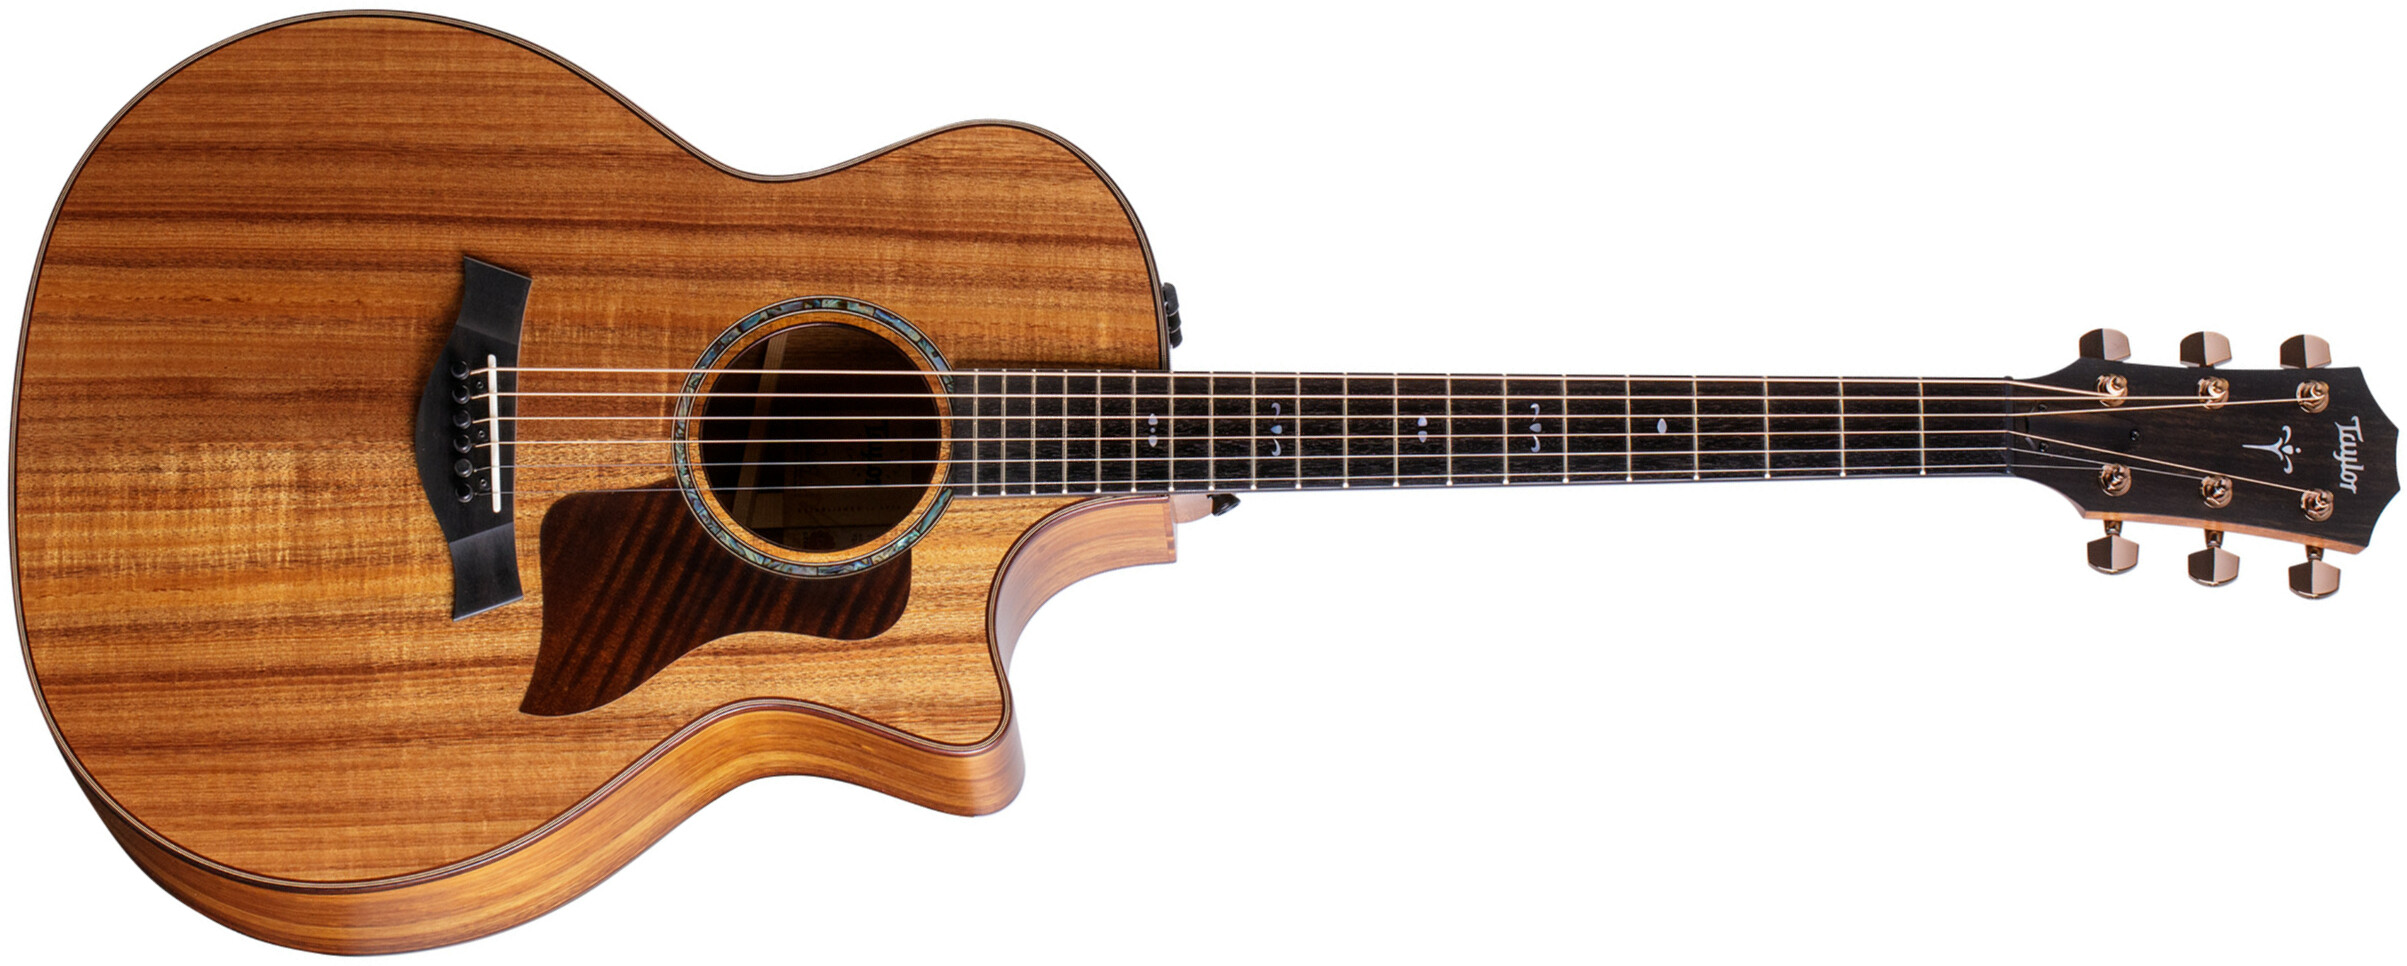 Taylor 724ce Koa East Indian Rw - Natural - Elektroakustische Gitarre - Main picture